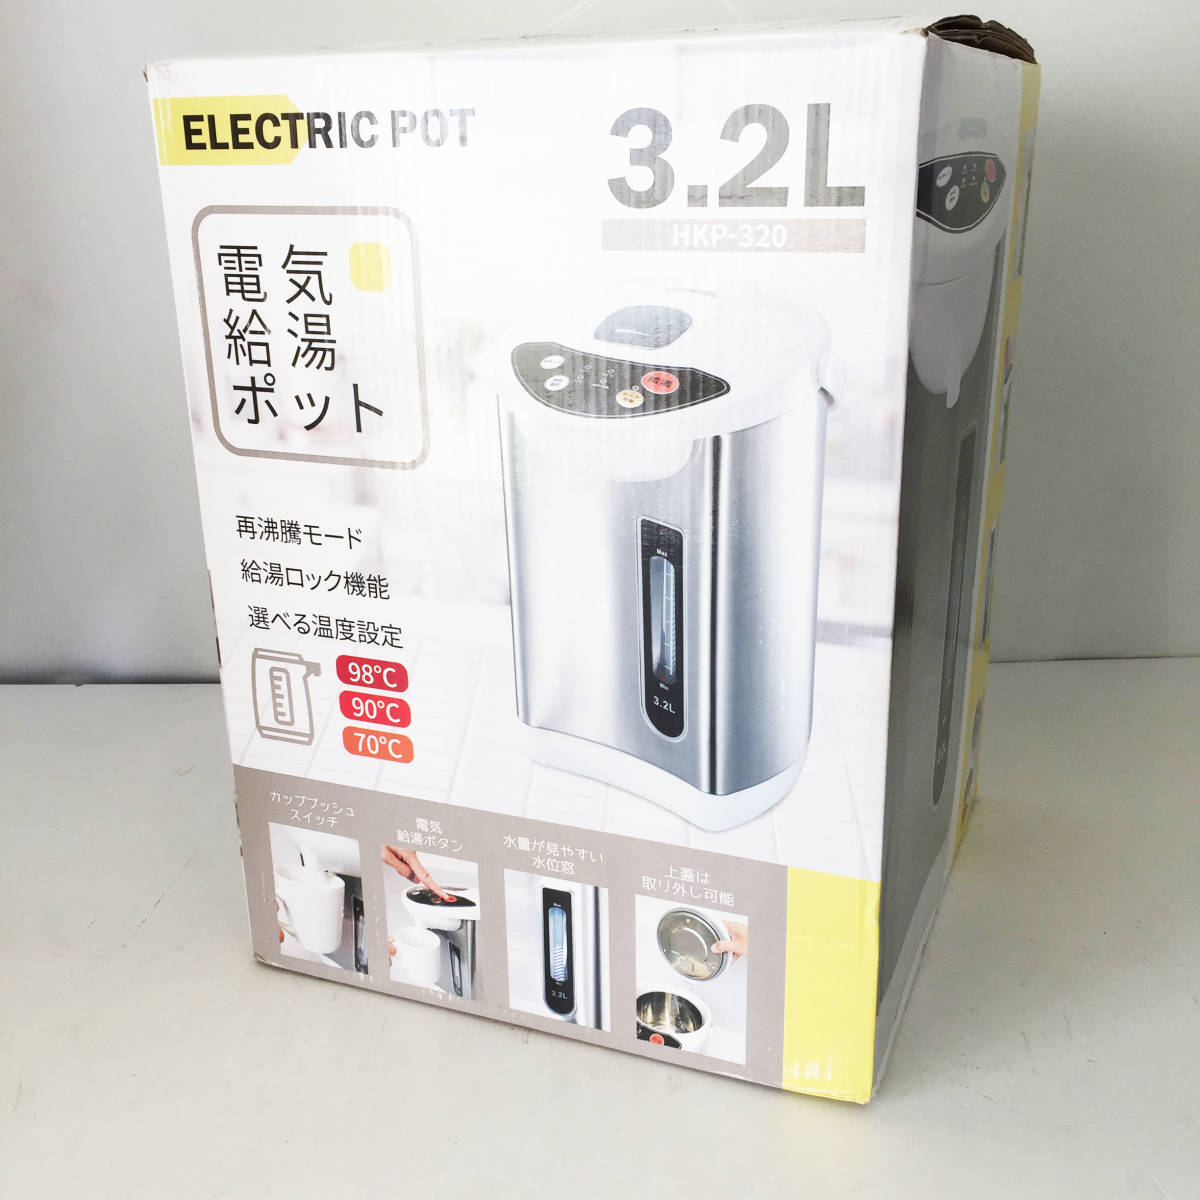 アウトレット☆電気ポット 3.2L HKP-320 シルバー おうち時間 ミルク 時短 自動ロック 送料無料